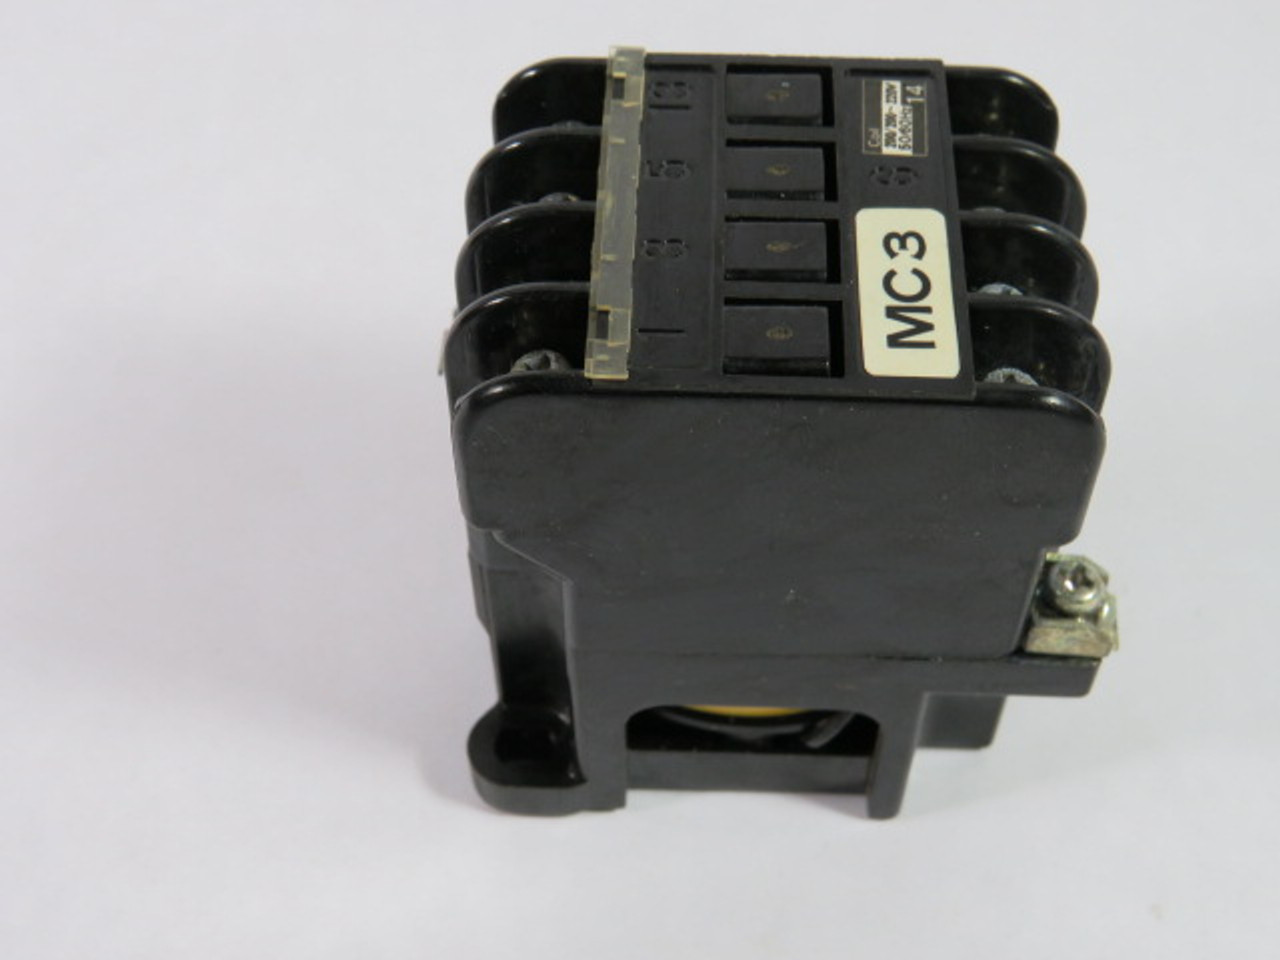 Fuji Electric SRCa3631-0(4a) Contactor 200-220V 50/60Hz USED